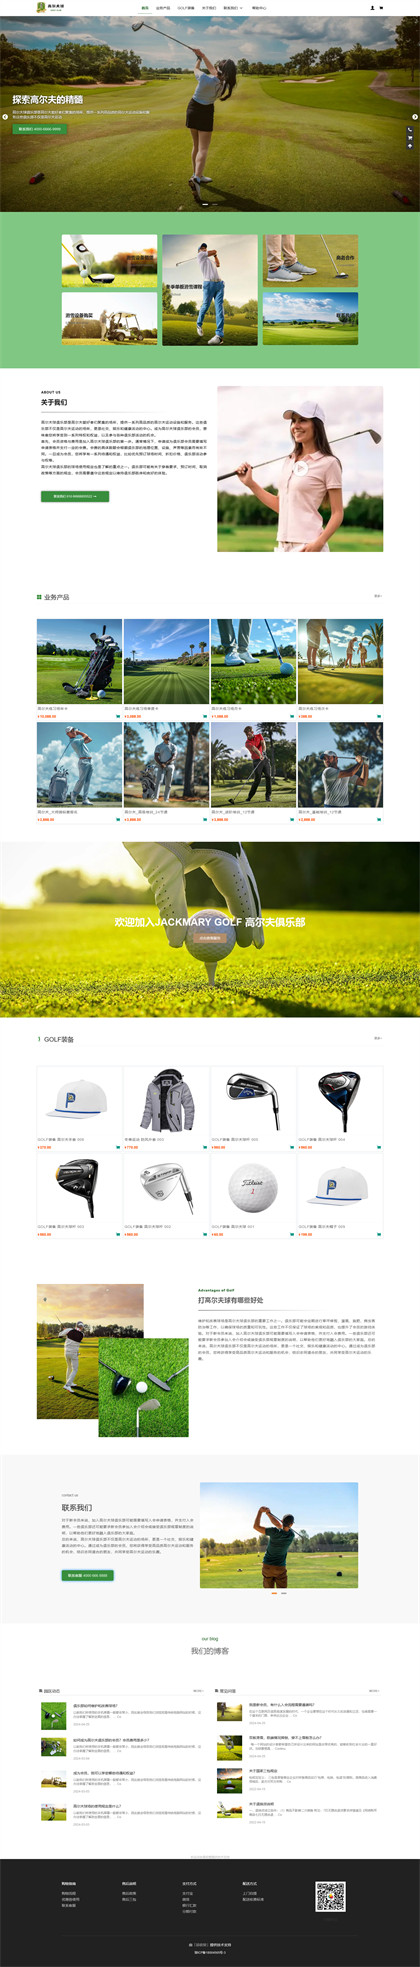 高尔夫球场-高尔夫俱乐部-高尔夫球会-高尔夫度假村-商城网站模板网站模板图片